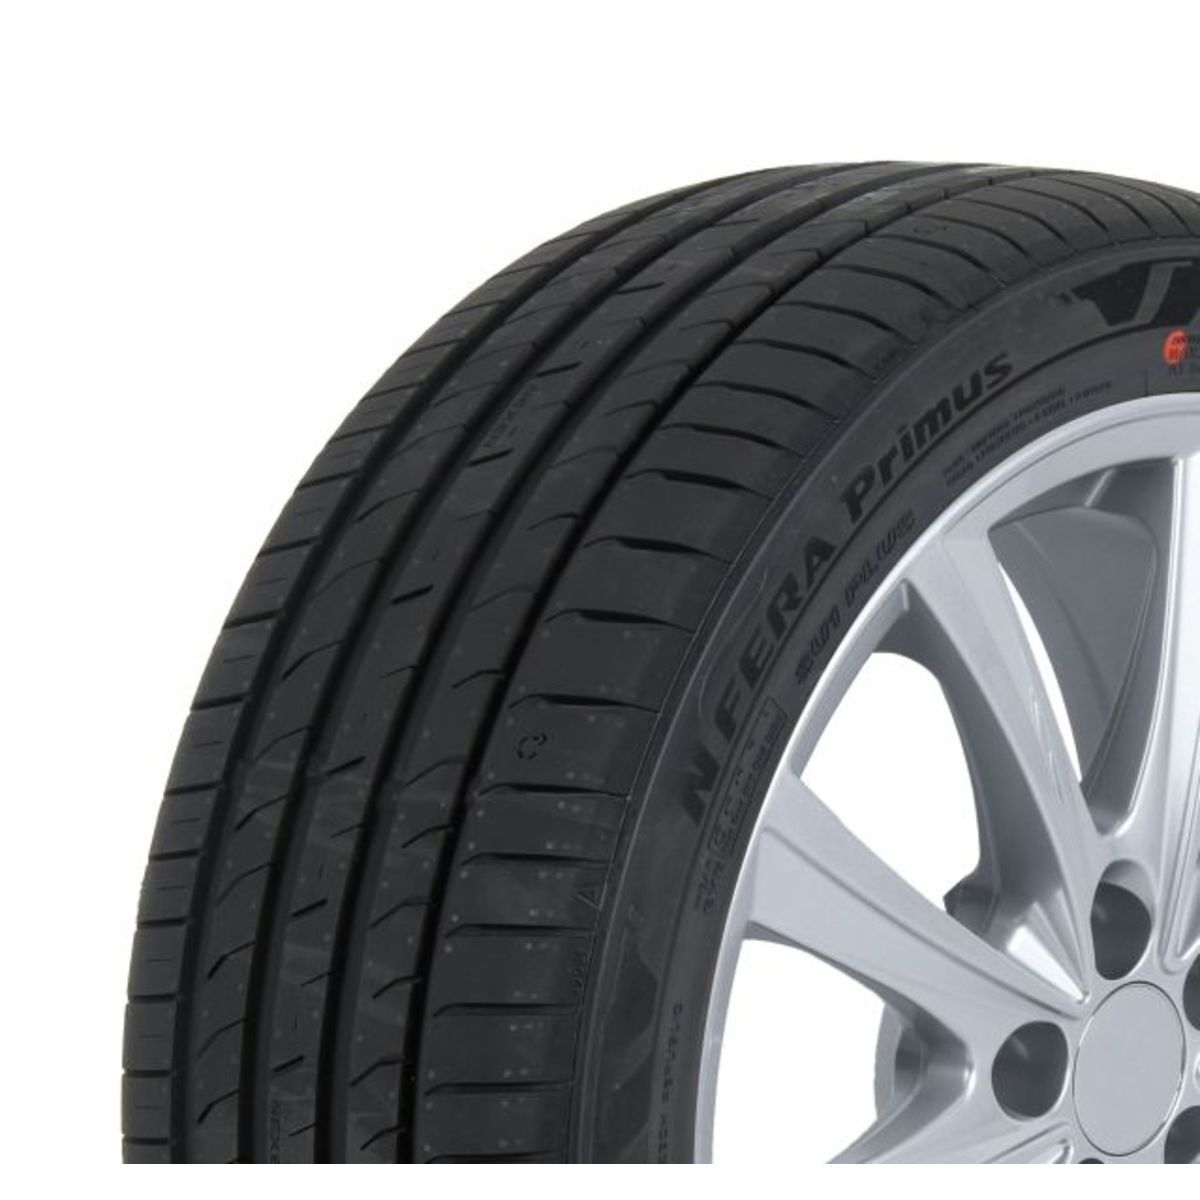 Neumáticos de verano NEXEN NFera Primus 215/50R17 XL 95V